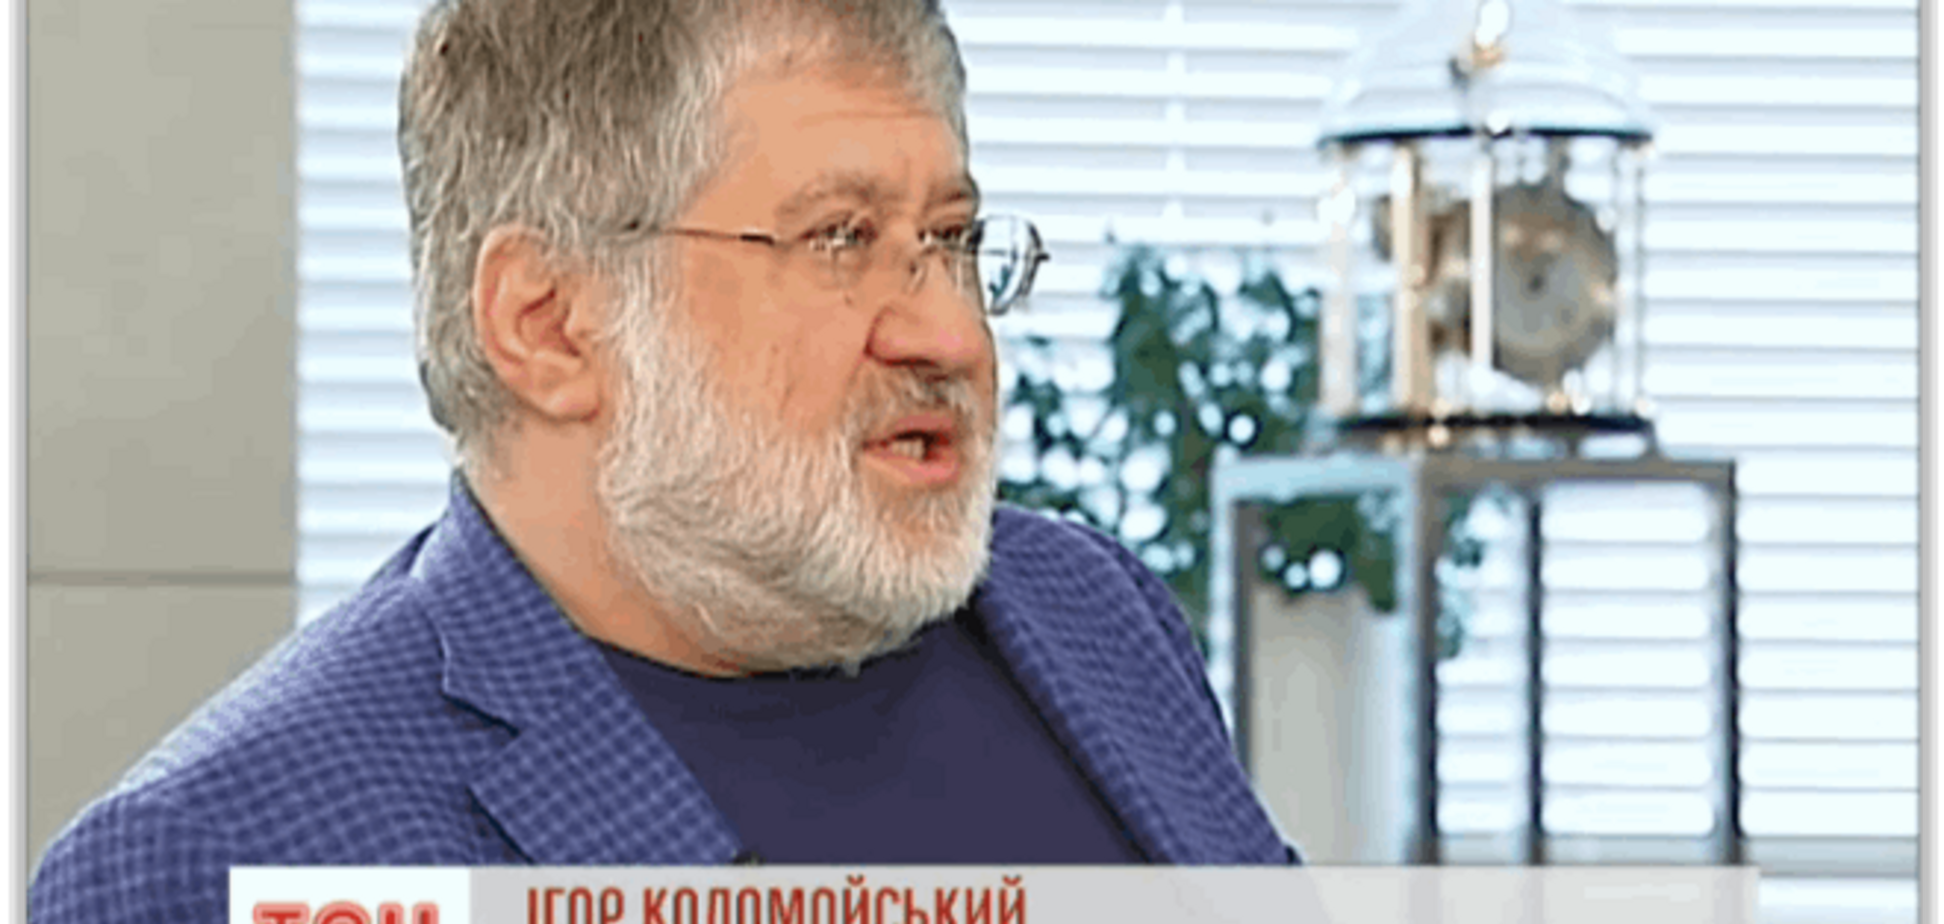 Коломойский сожалеет, что 'обидел журналистское сообщество'